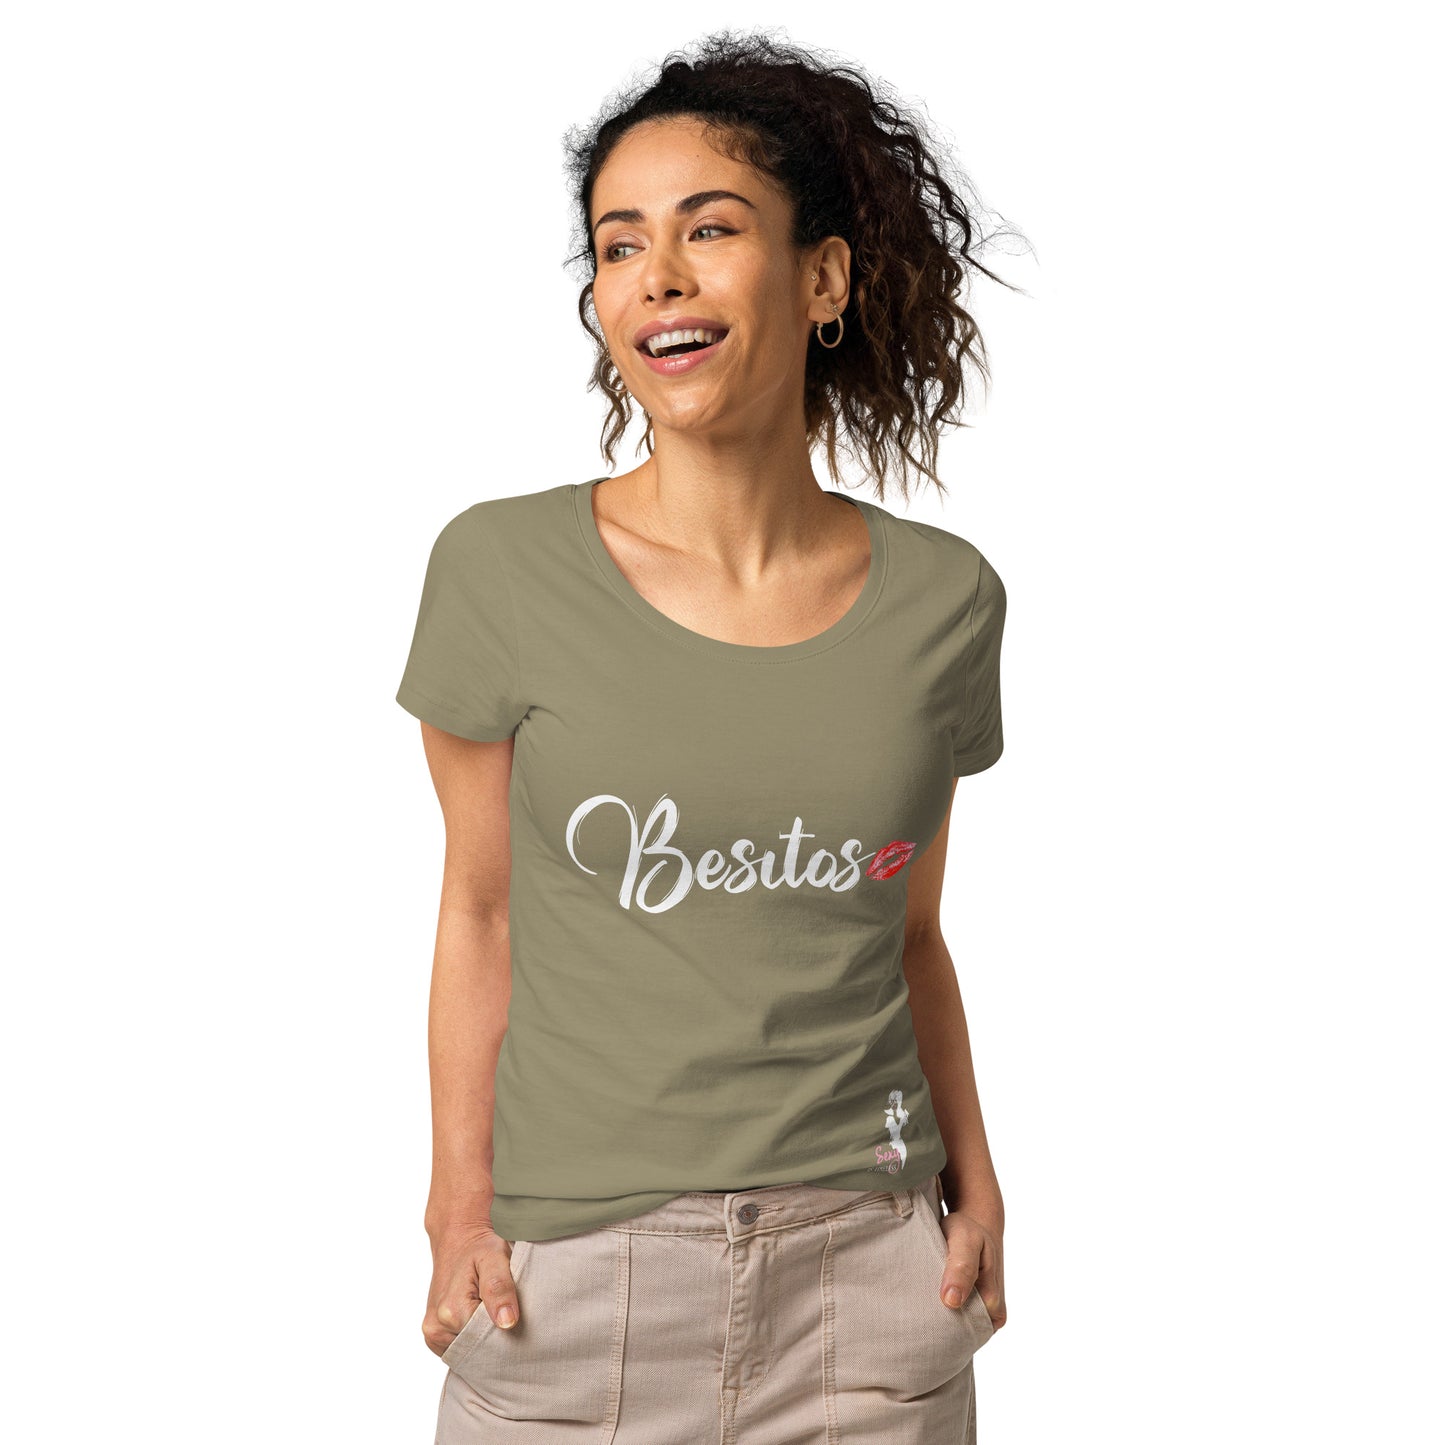 Besitos organic t-shirt